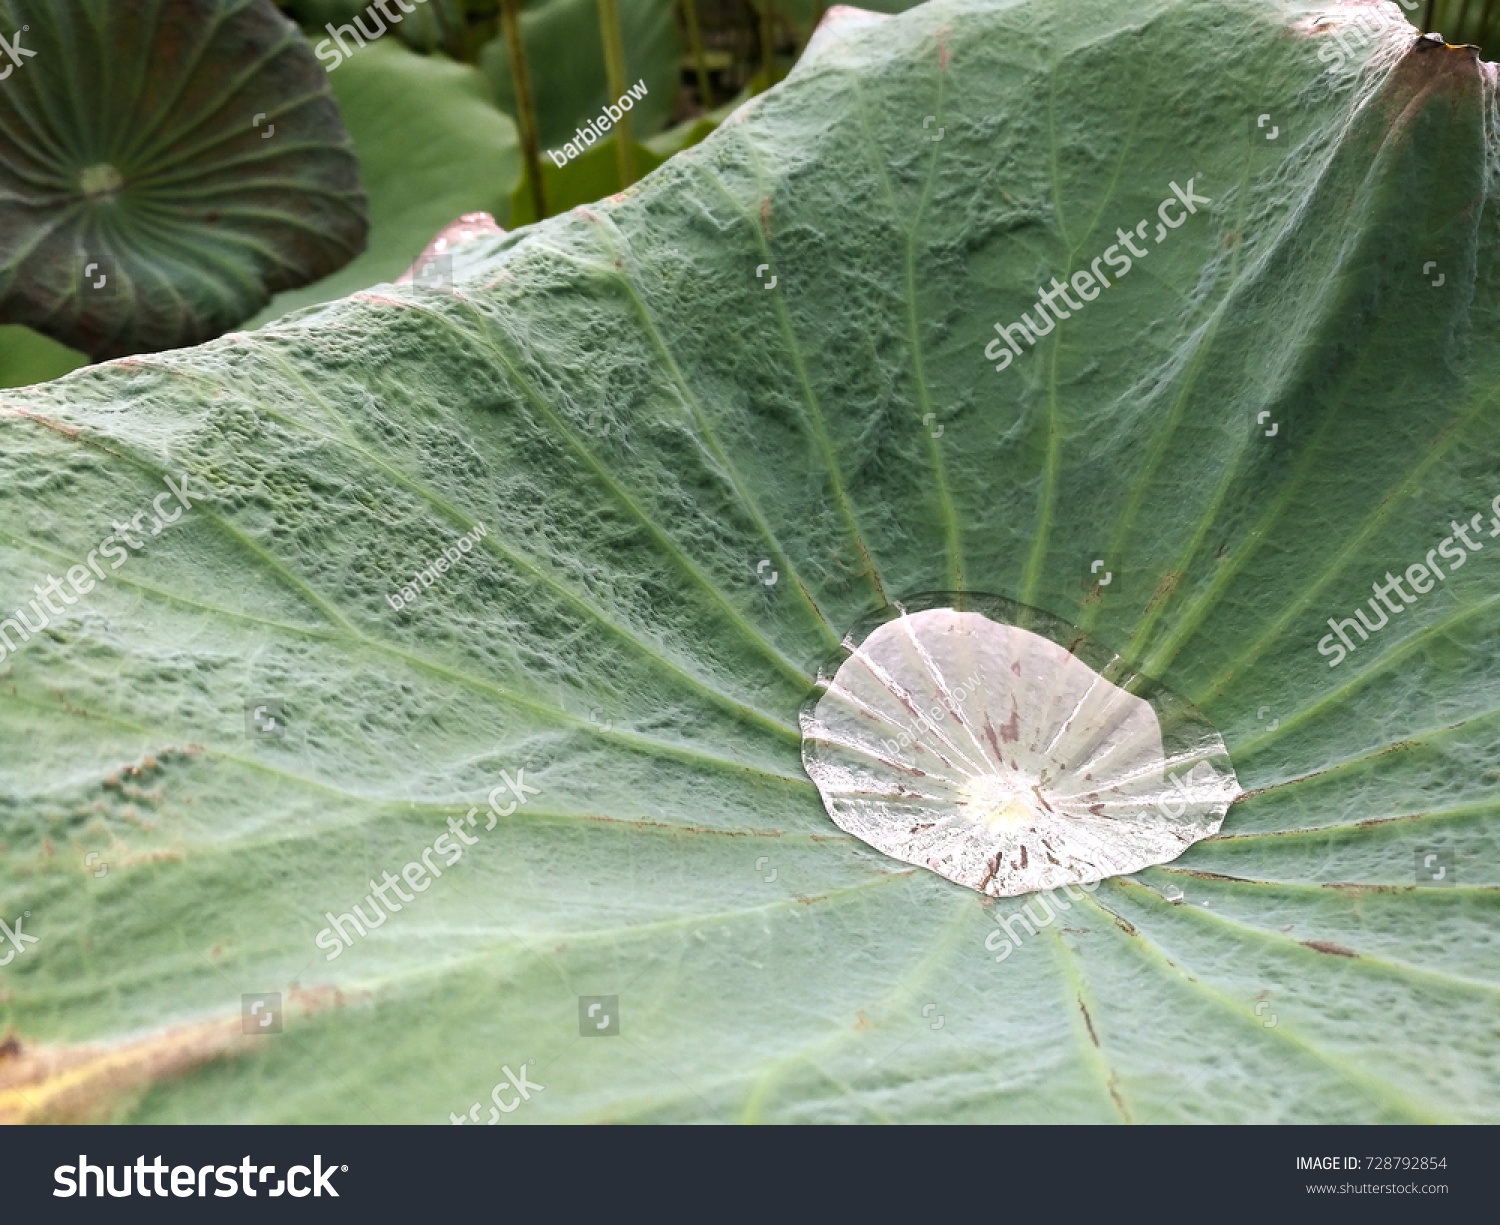 water drop on the lotus leaf #728792854